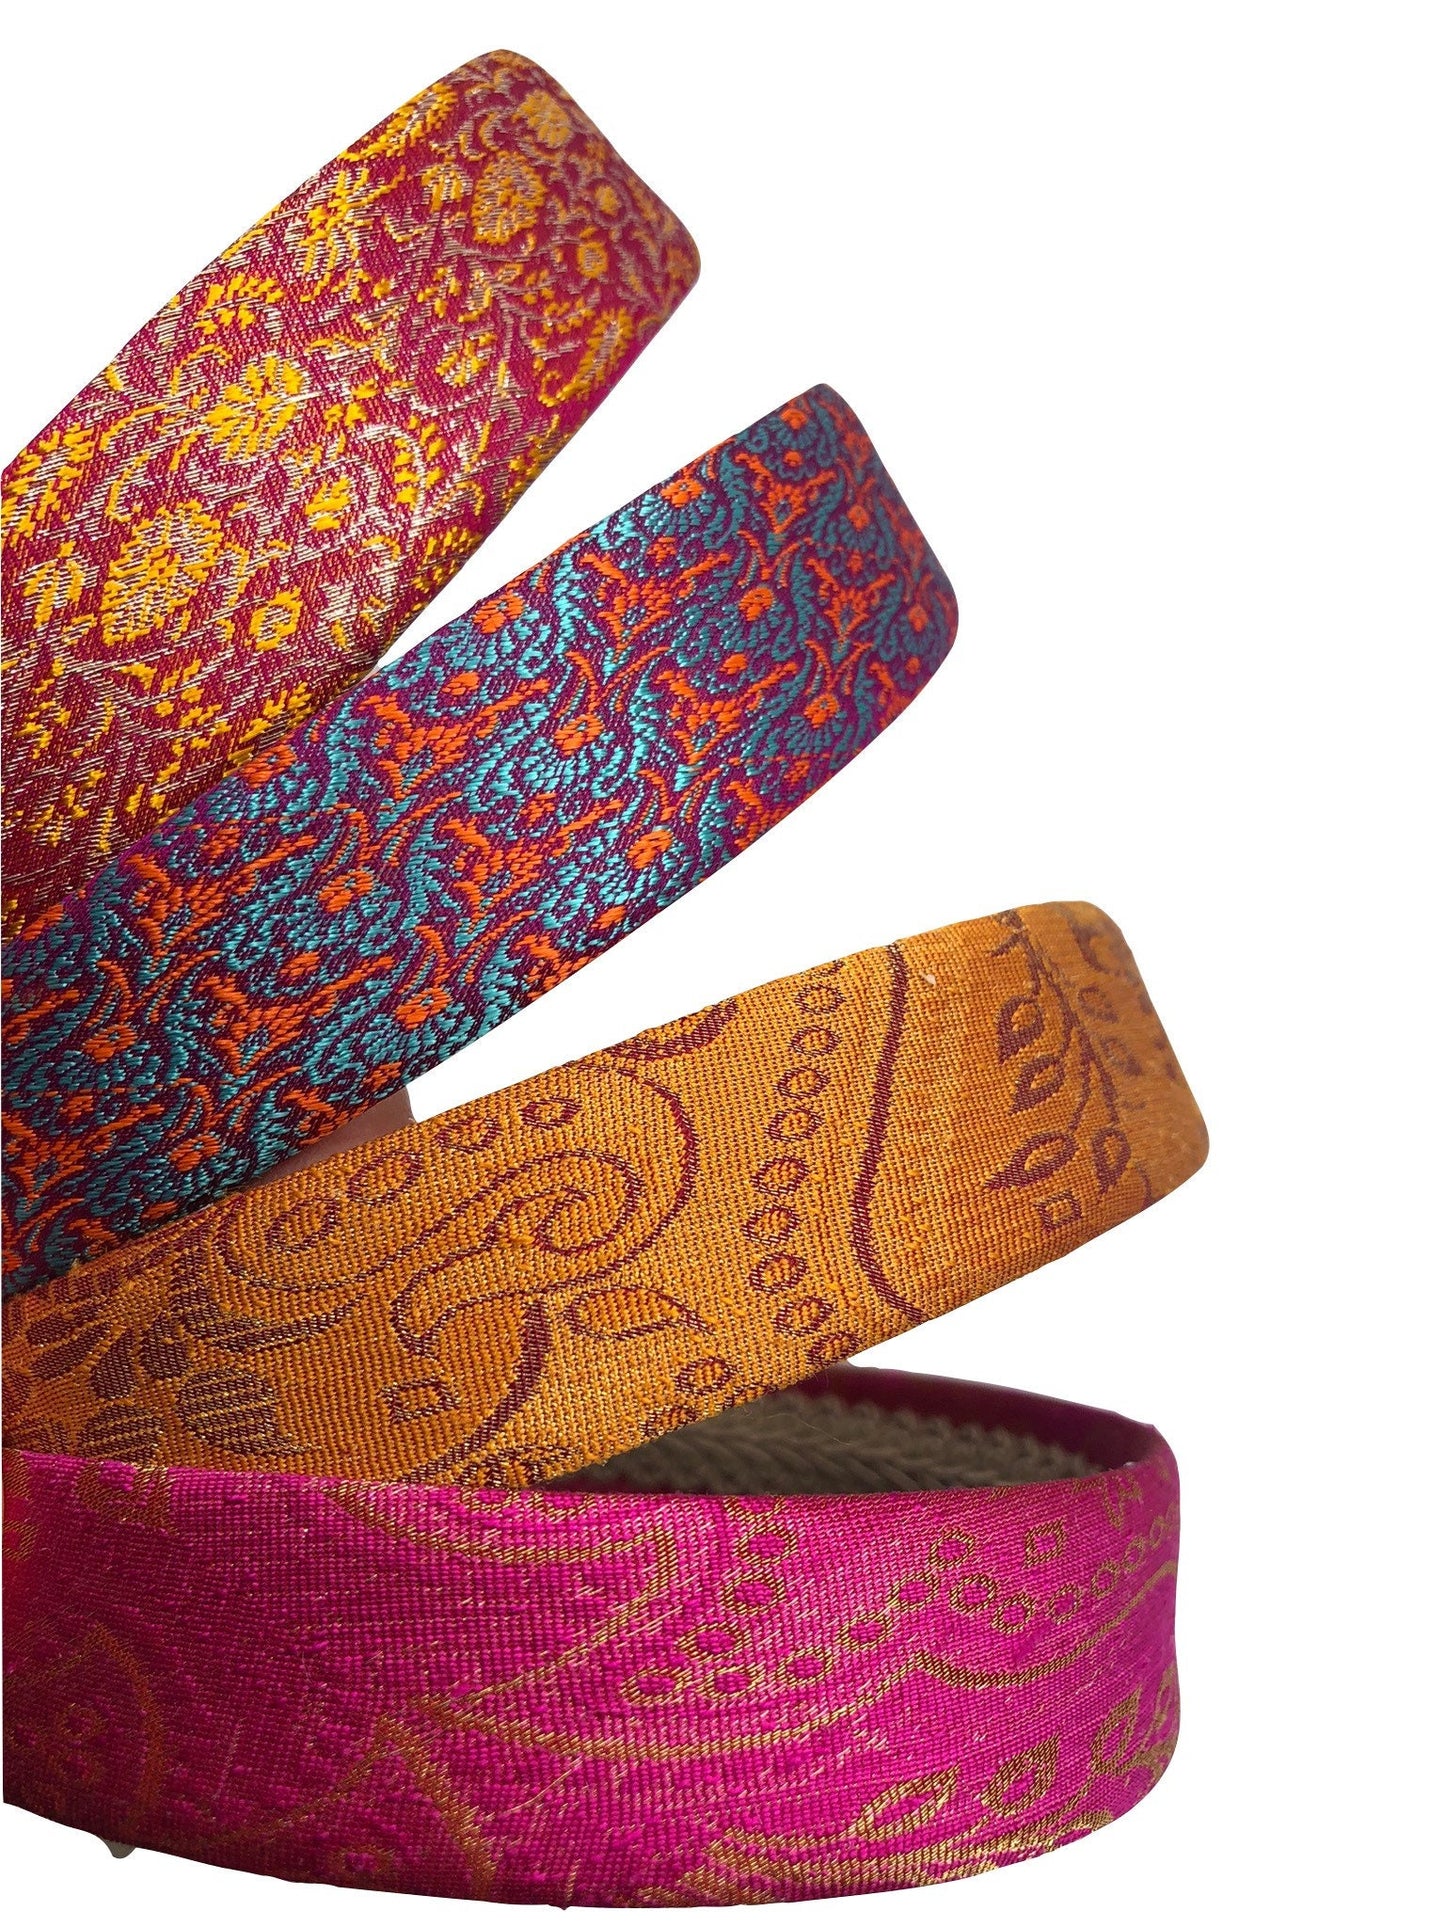 Karin's Garden 1" Sari Silk Headband.  Made in the USA.  Fabric from Delhi